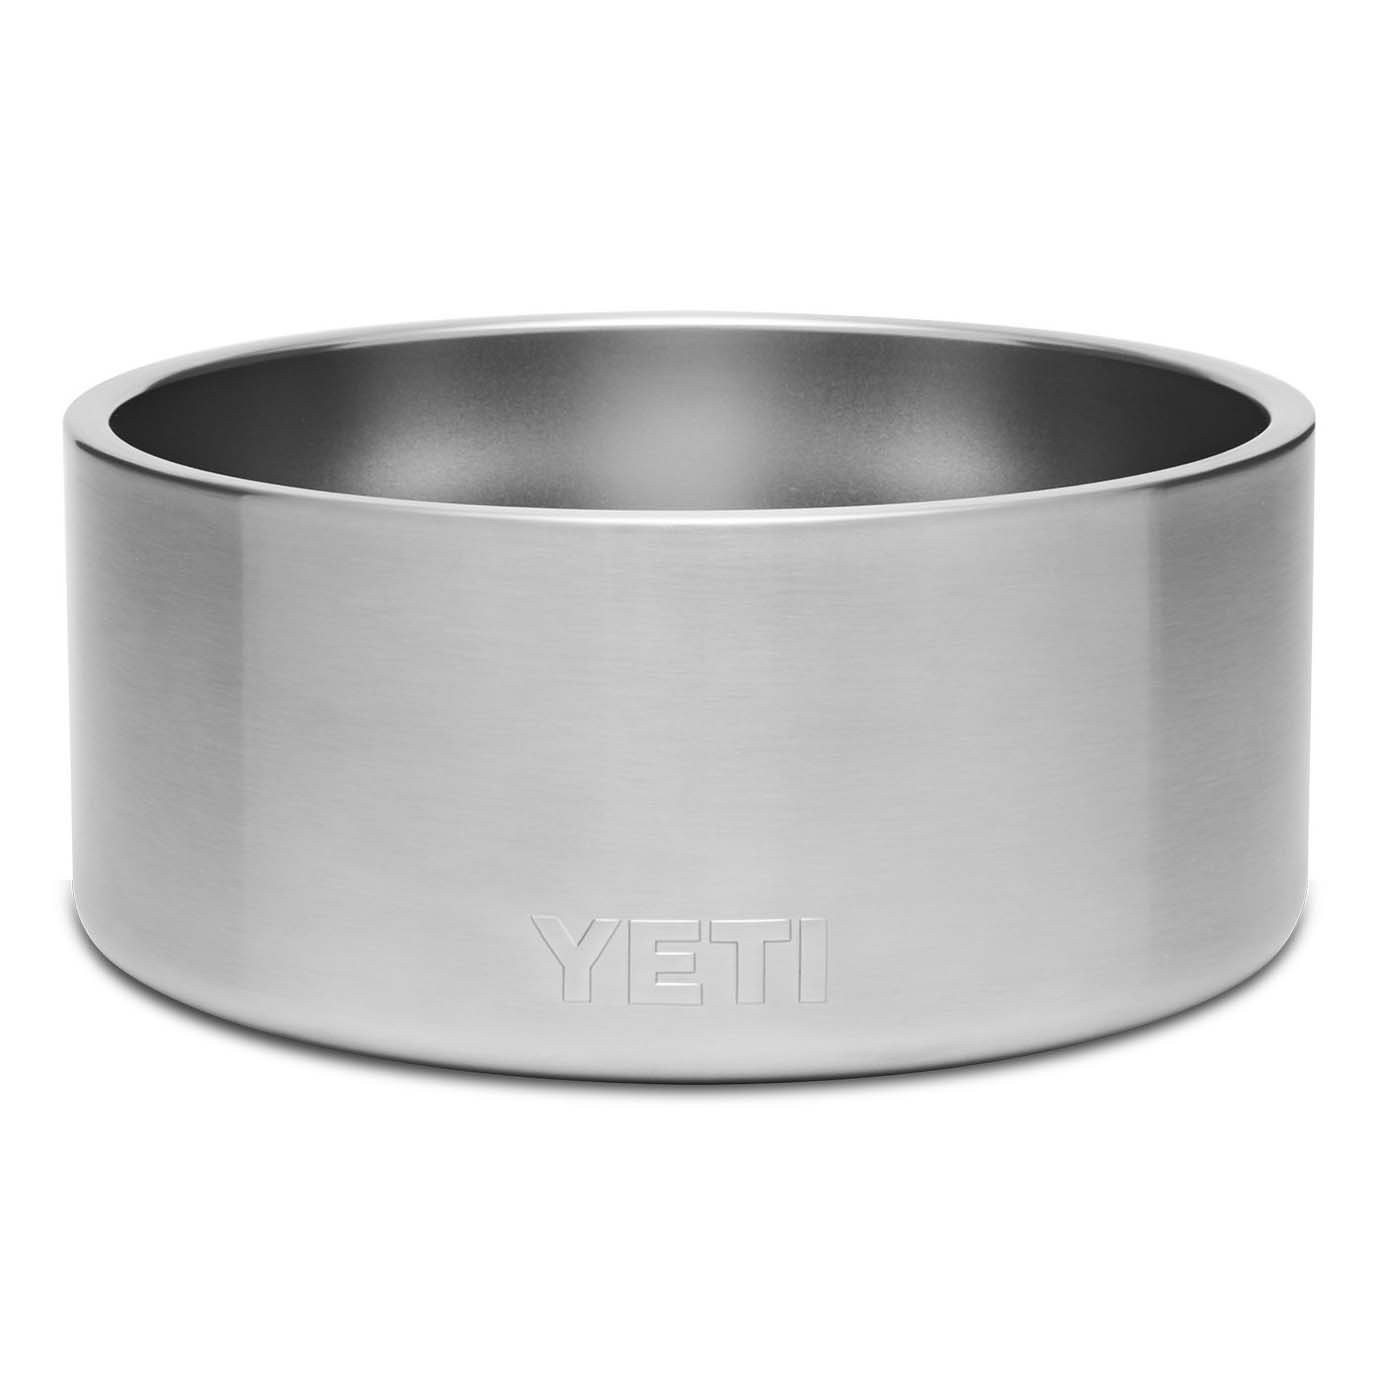 Yeti Boomer 8 Dog Bowl-Accessories-Yeti-Stainless Steel-Fishing Station